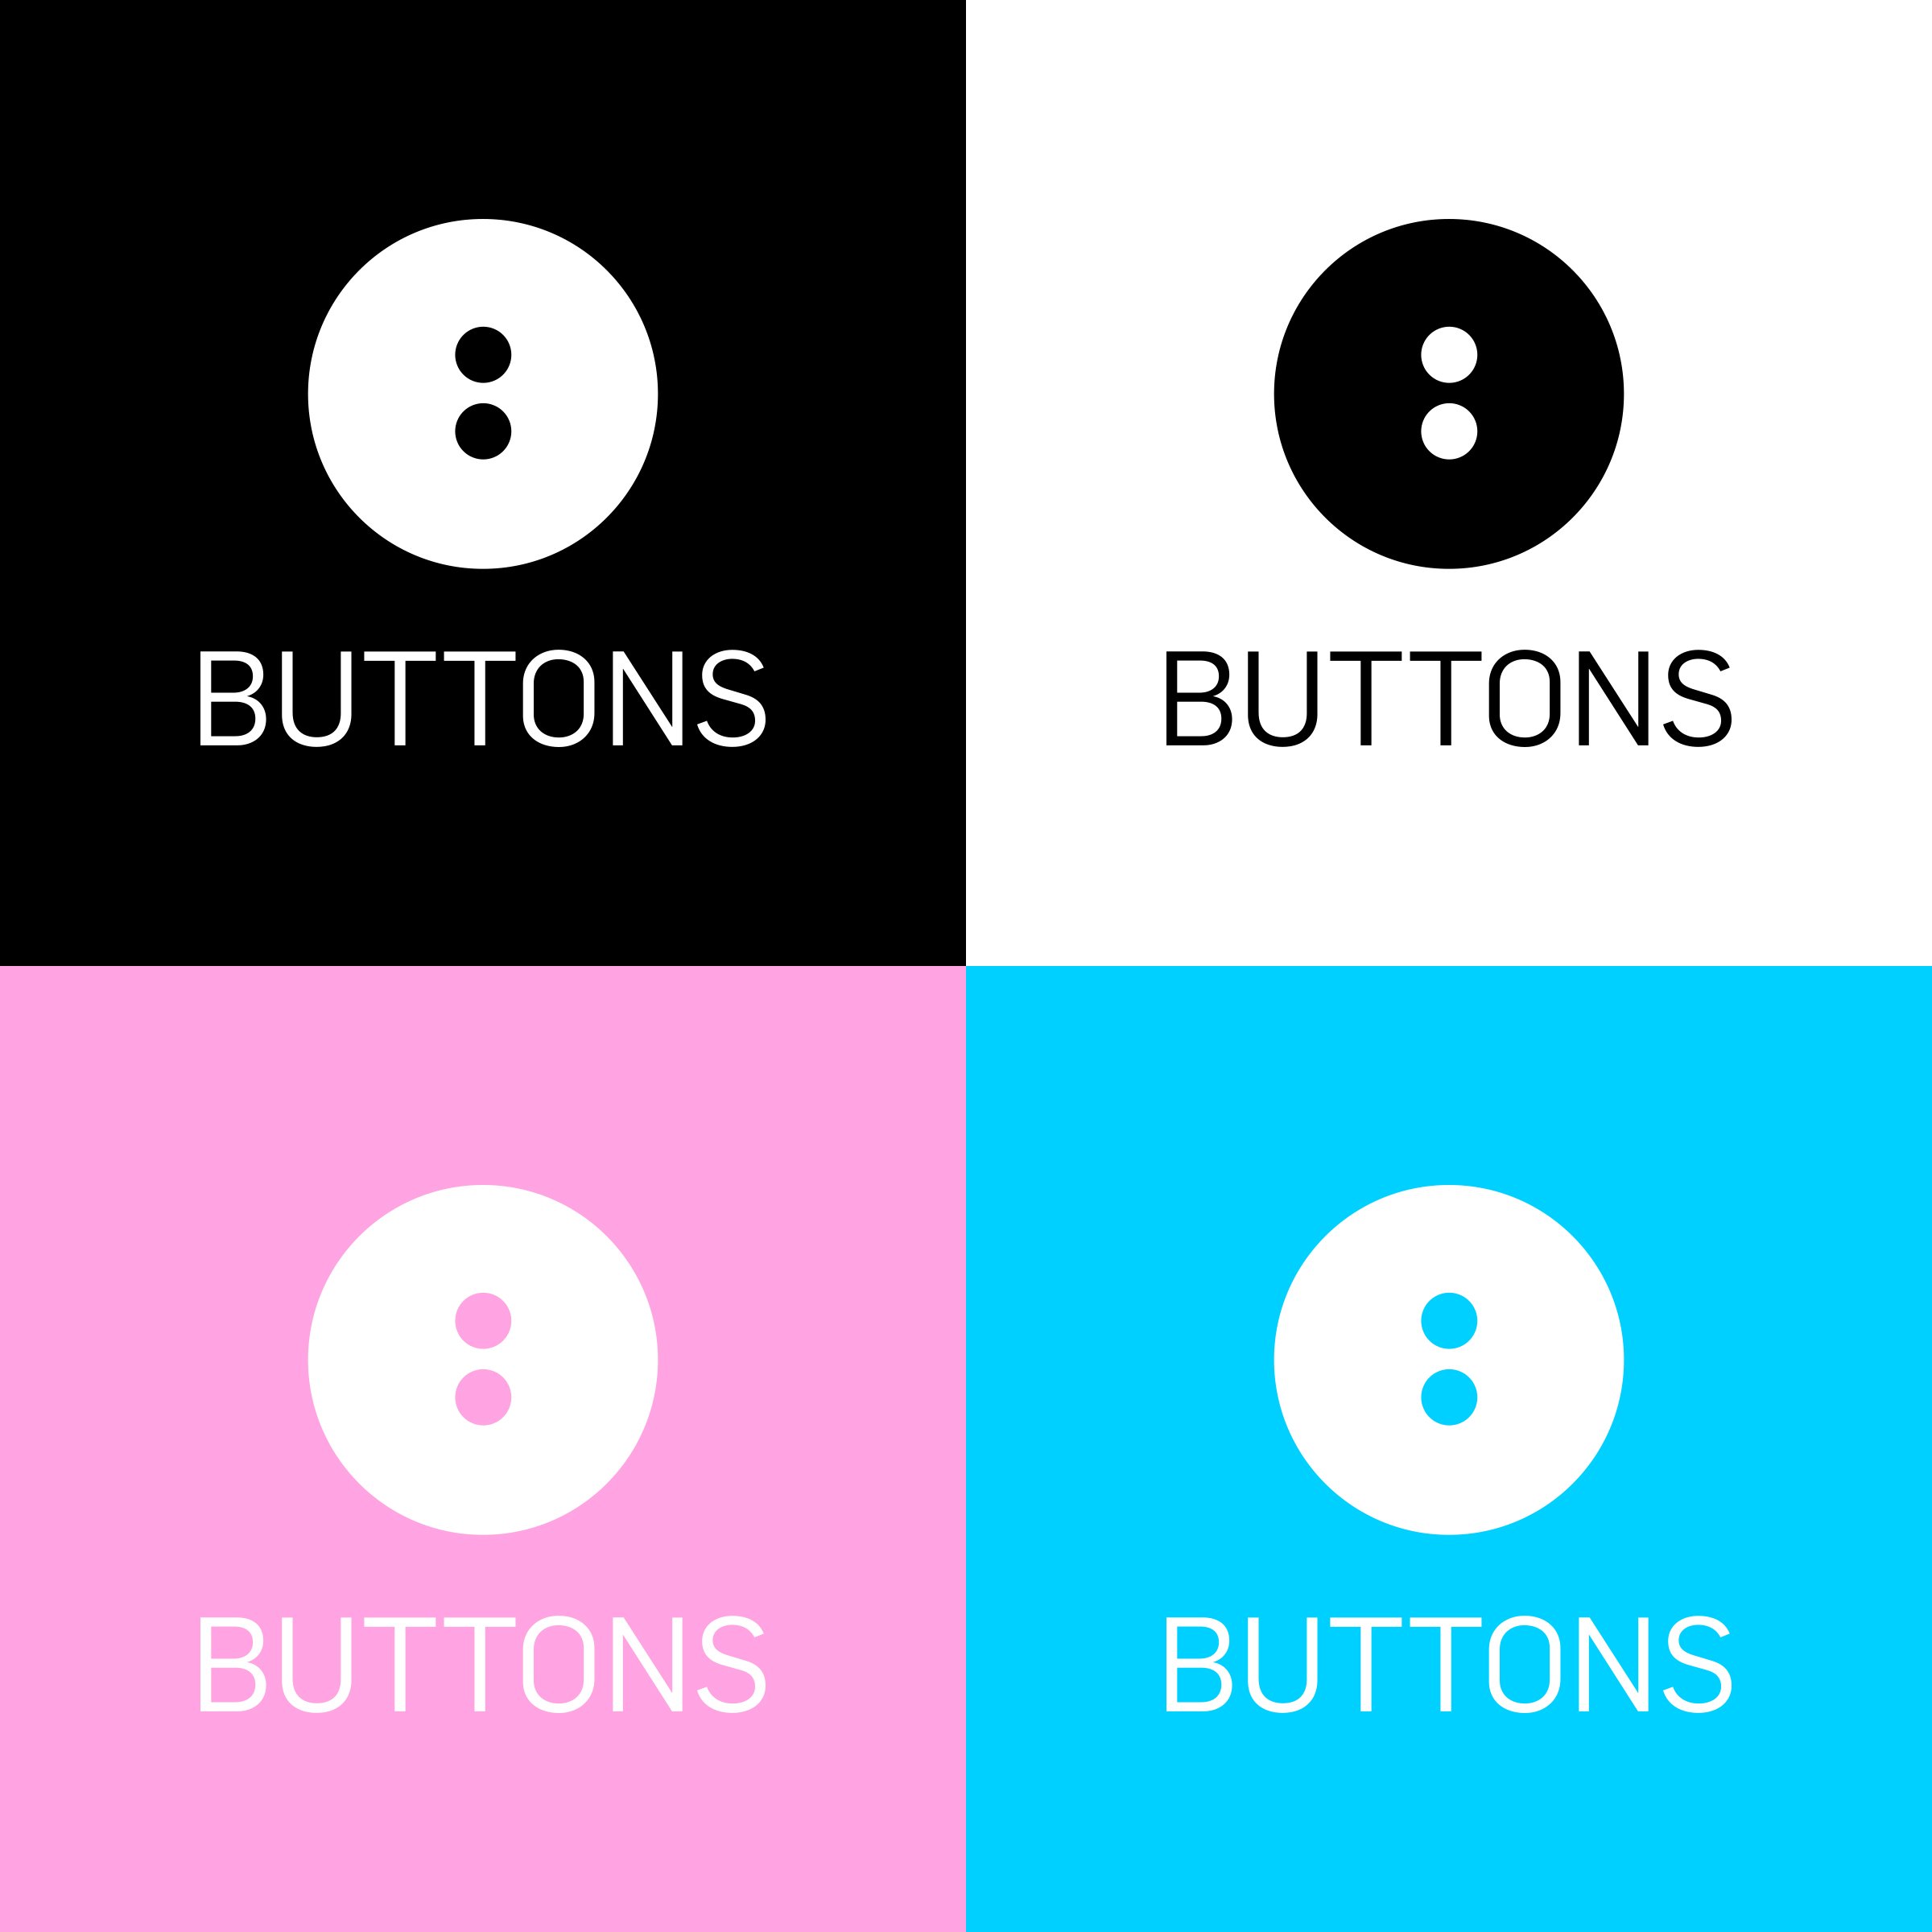 Buttons-Logos-01.jpg